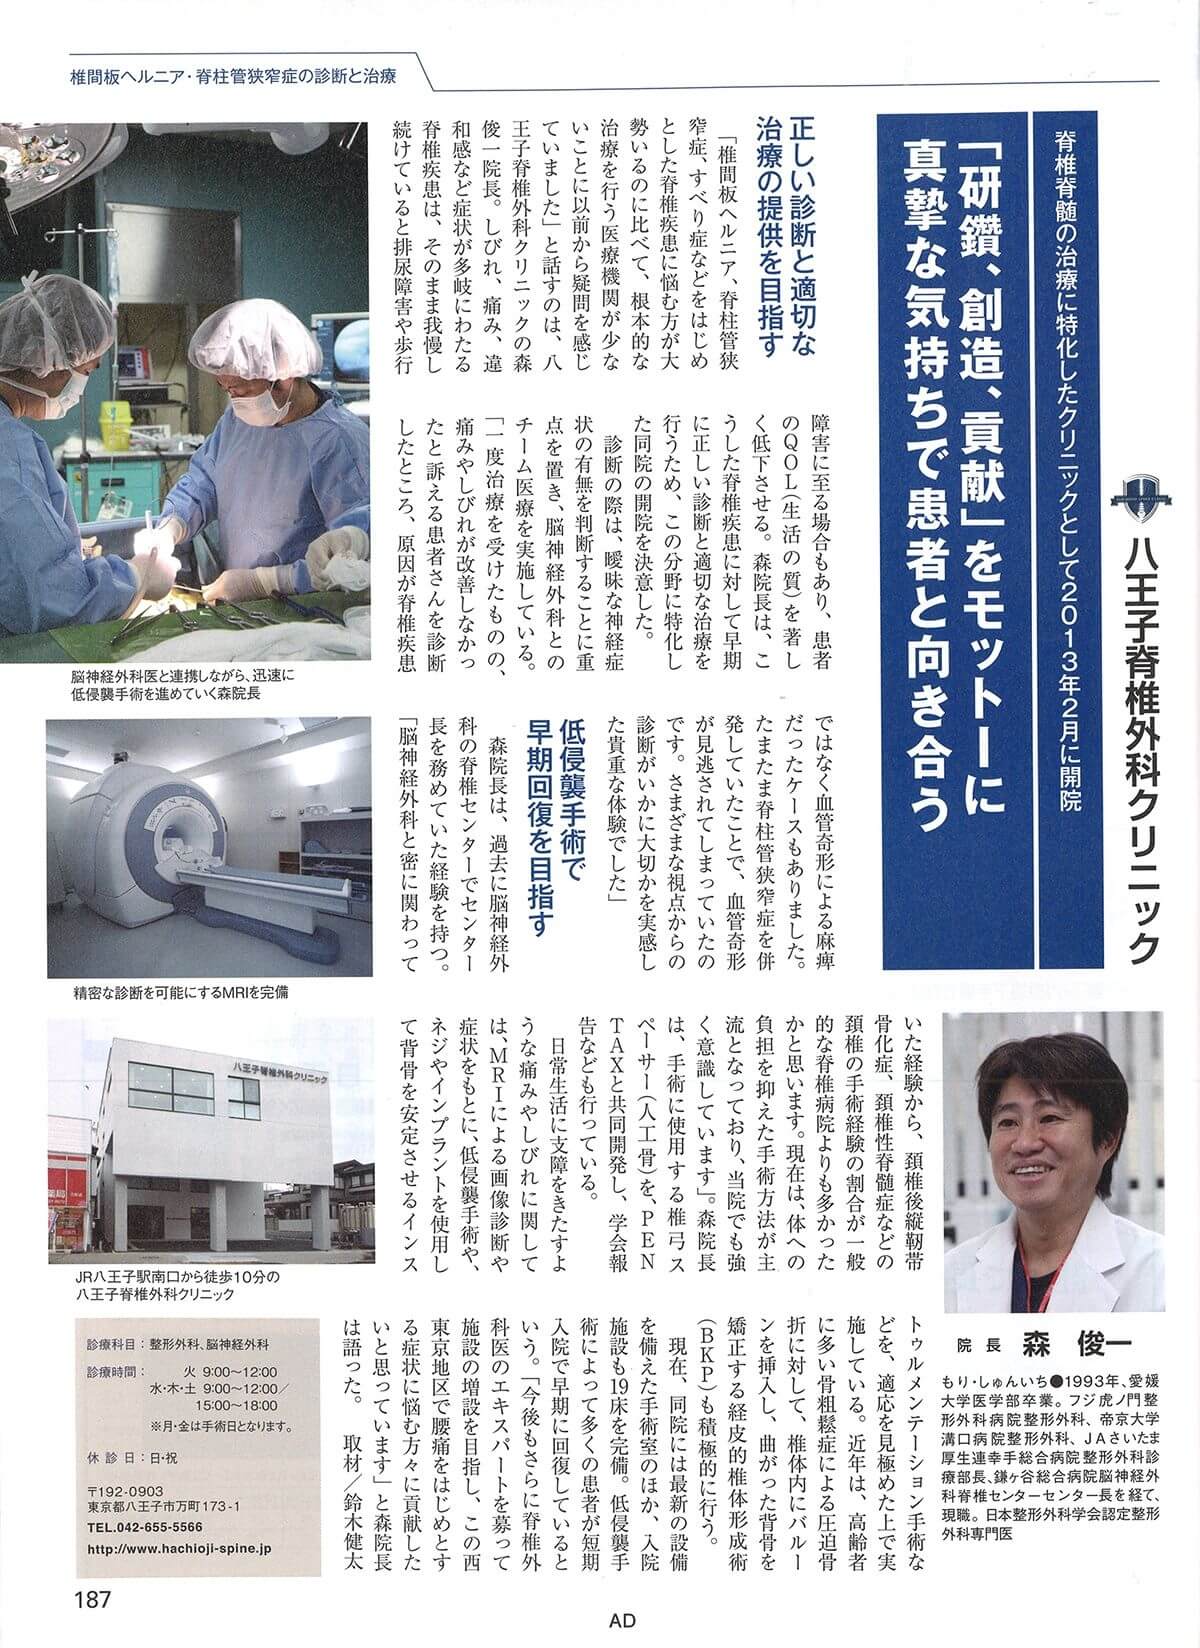 日経MOOK 日経実力病院調査2013年版 掲載ページ